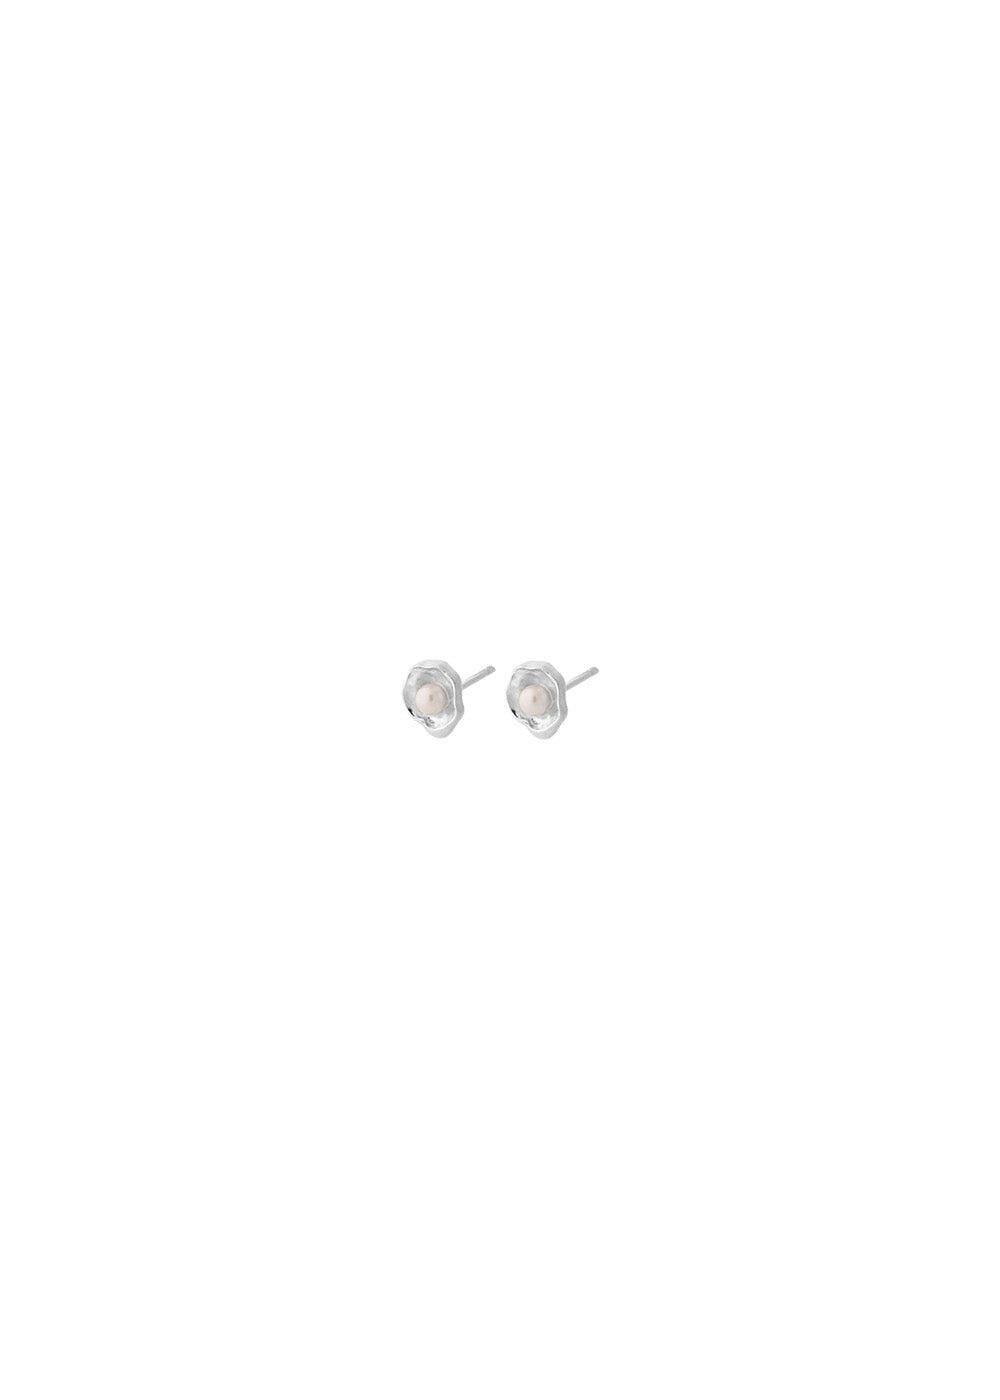 Hidden Pearl Earsticks size 8 mm - Silver